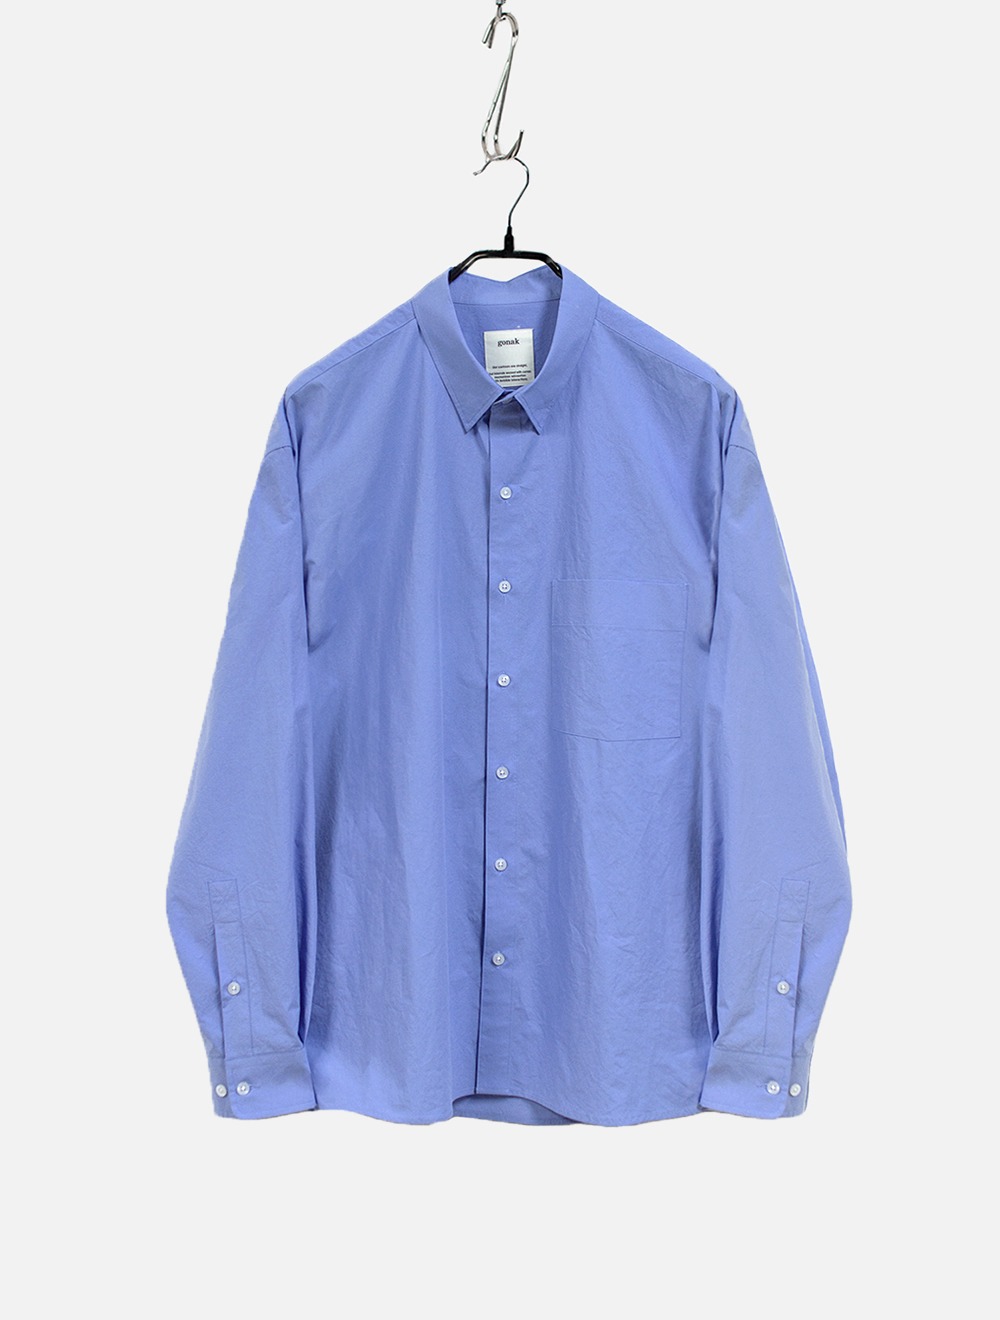 button down shirts (sax blue)